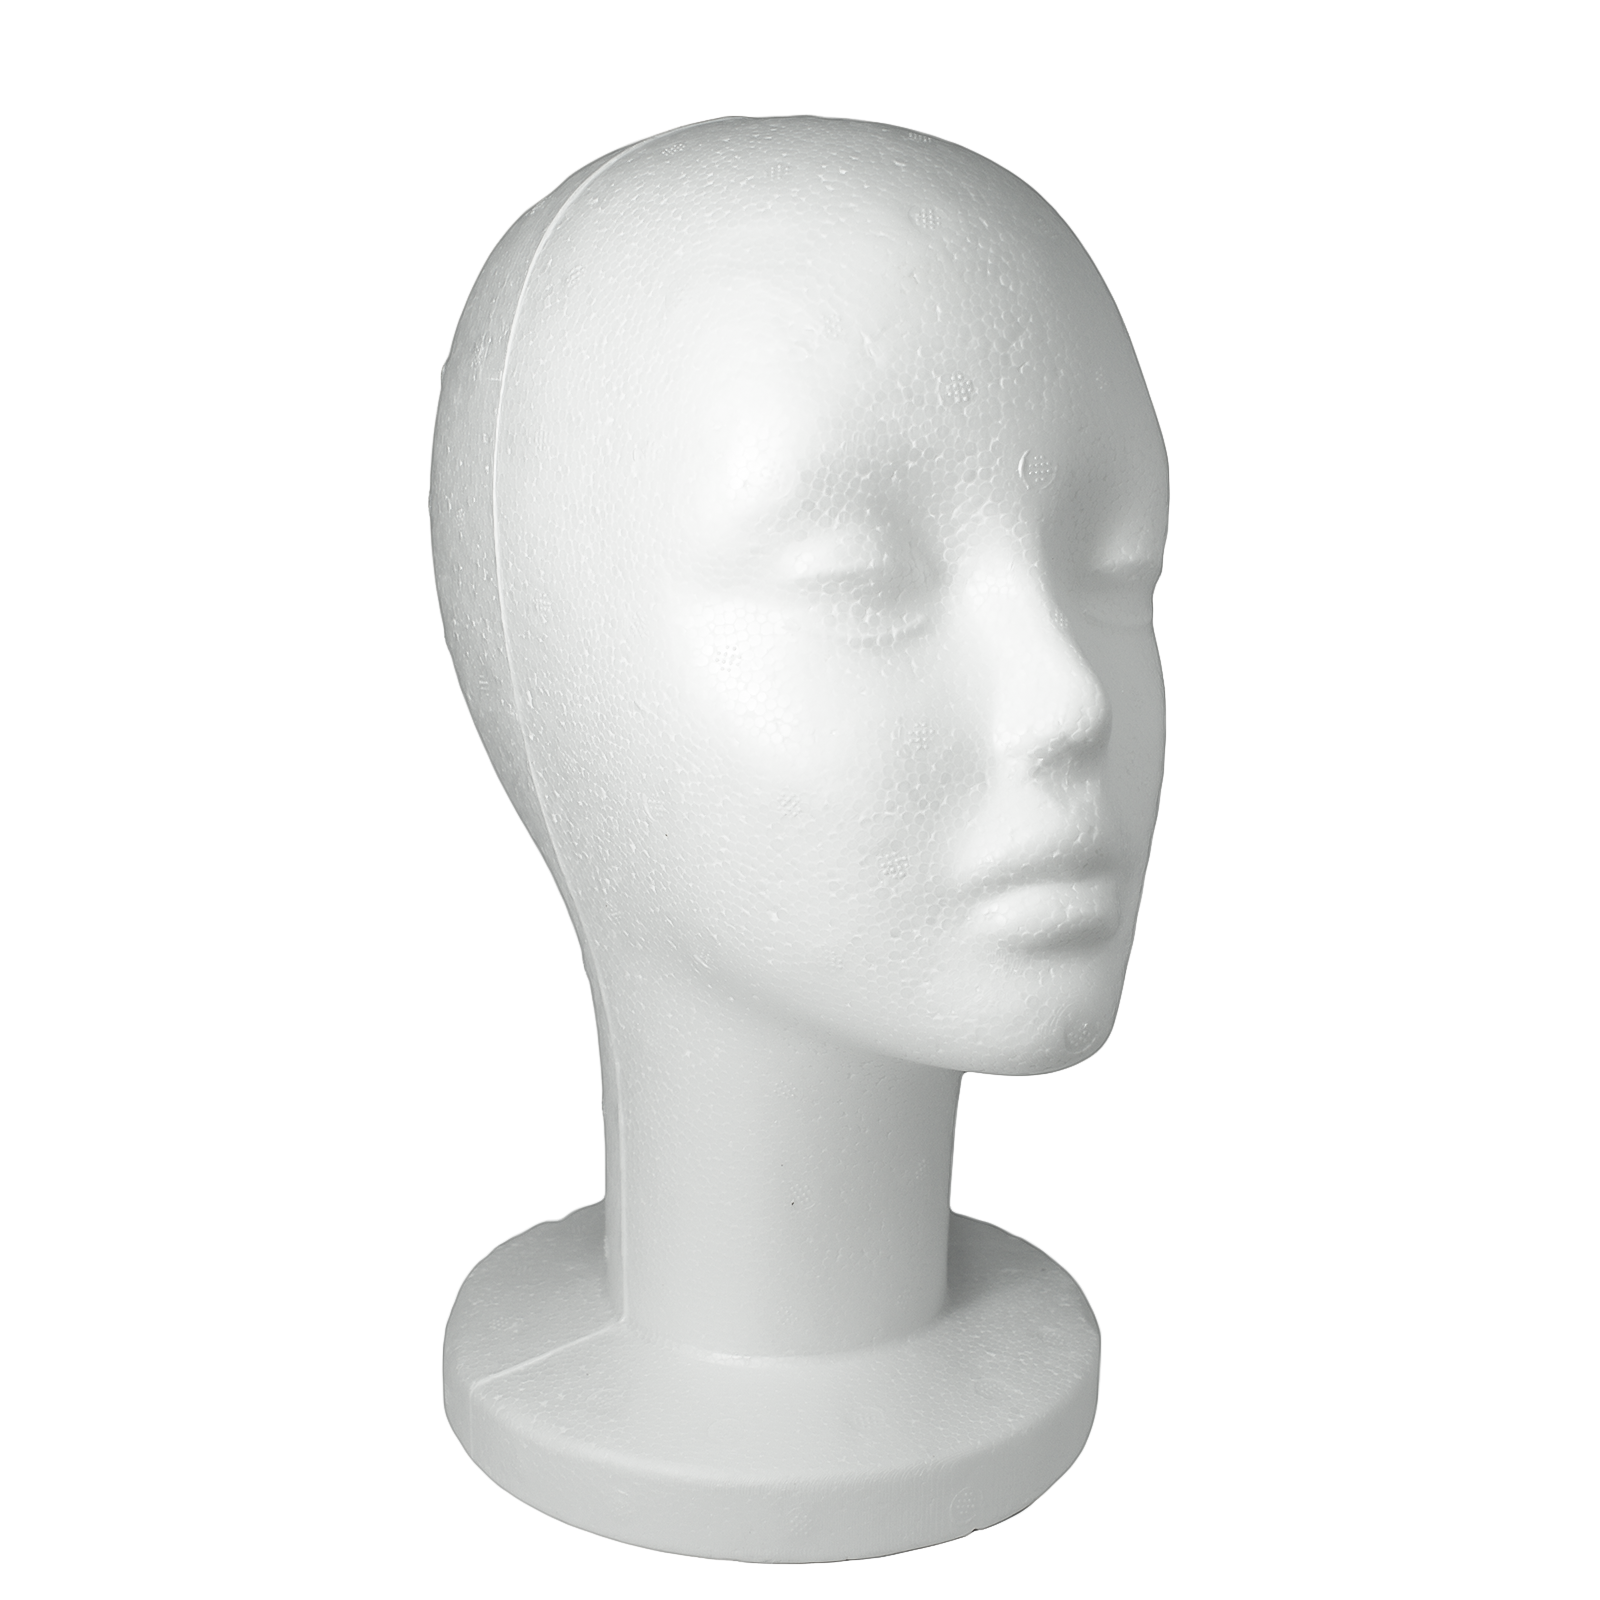  SHANY Styrofoam Model Heads ,Hat Wig Foam Mannequin